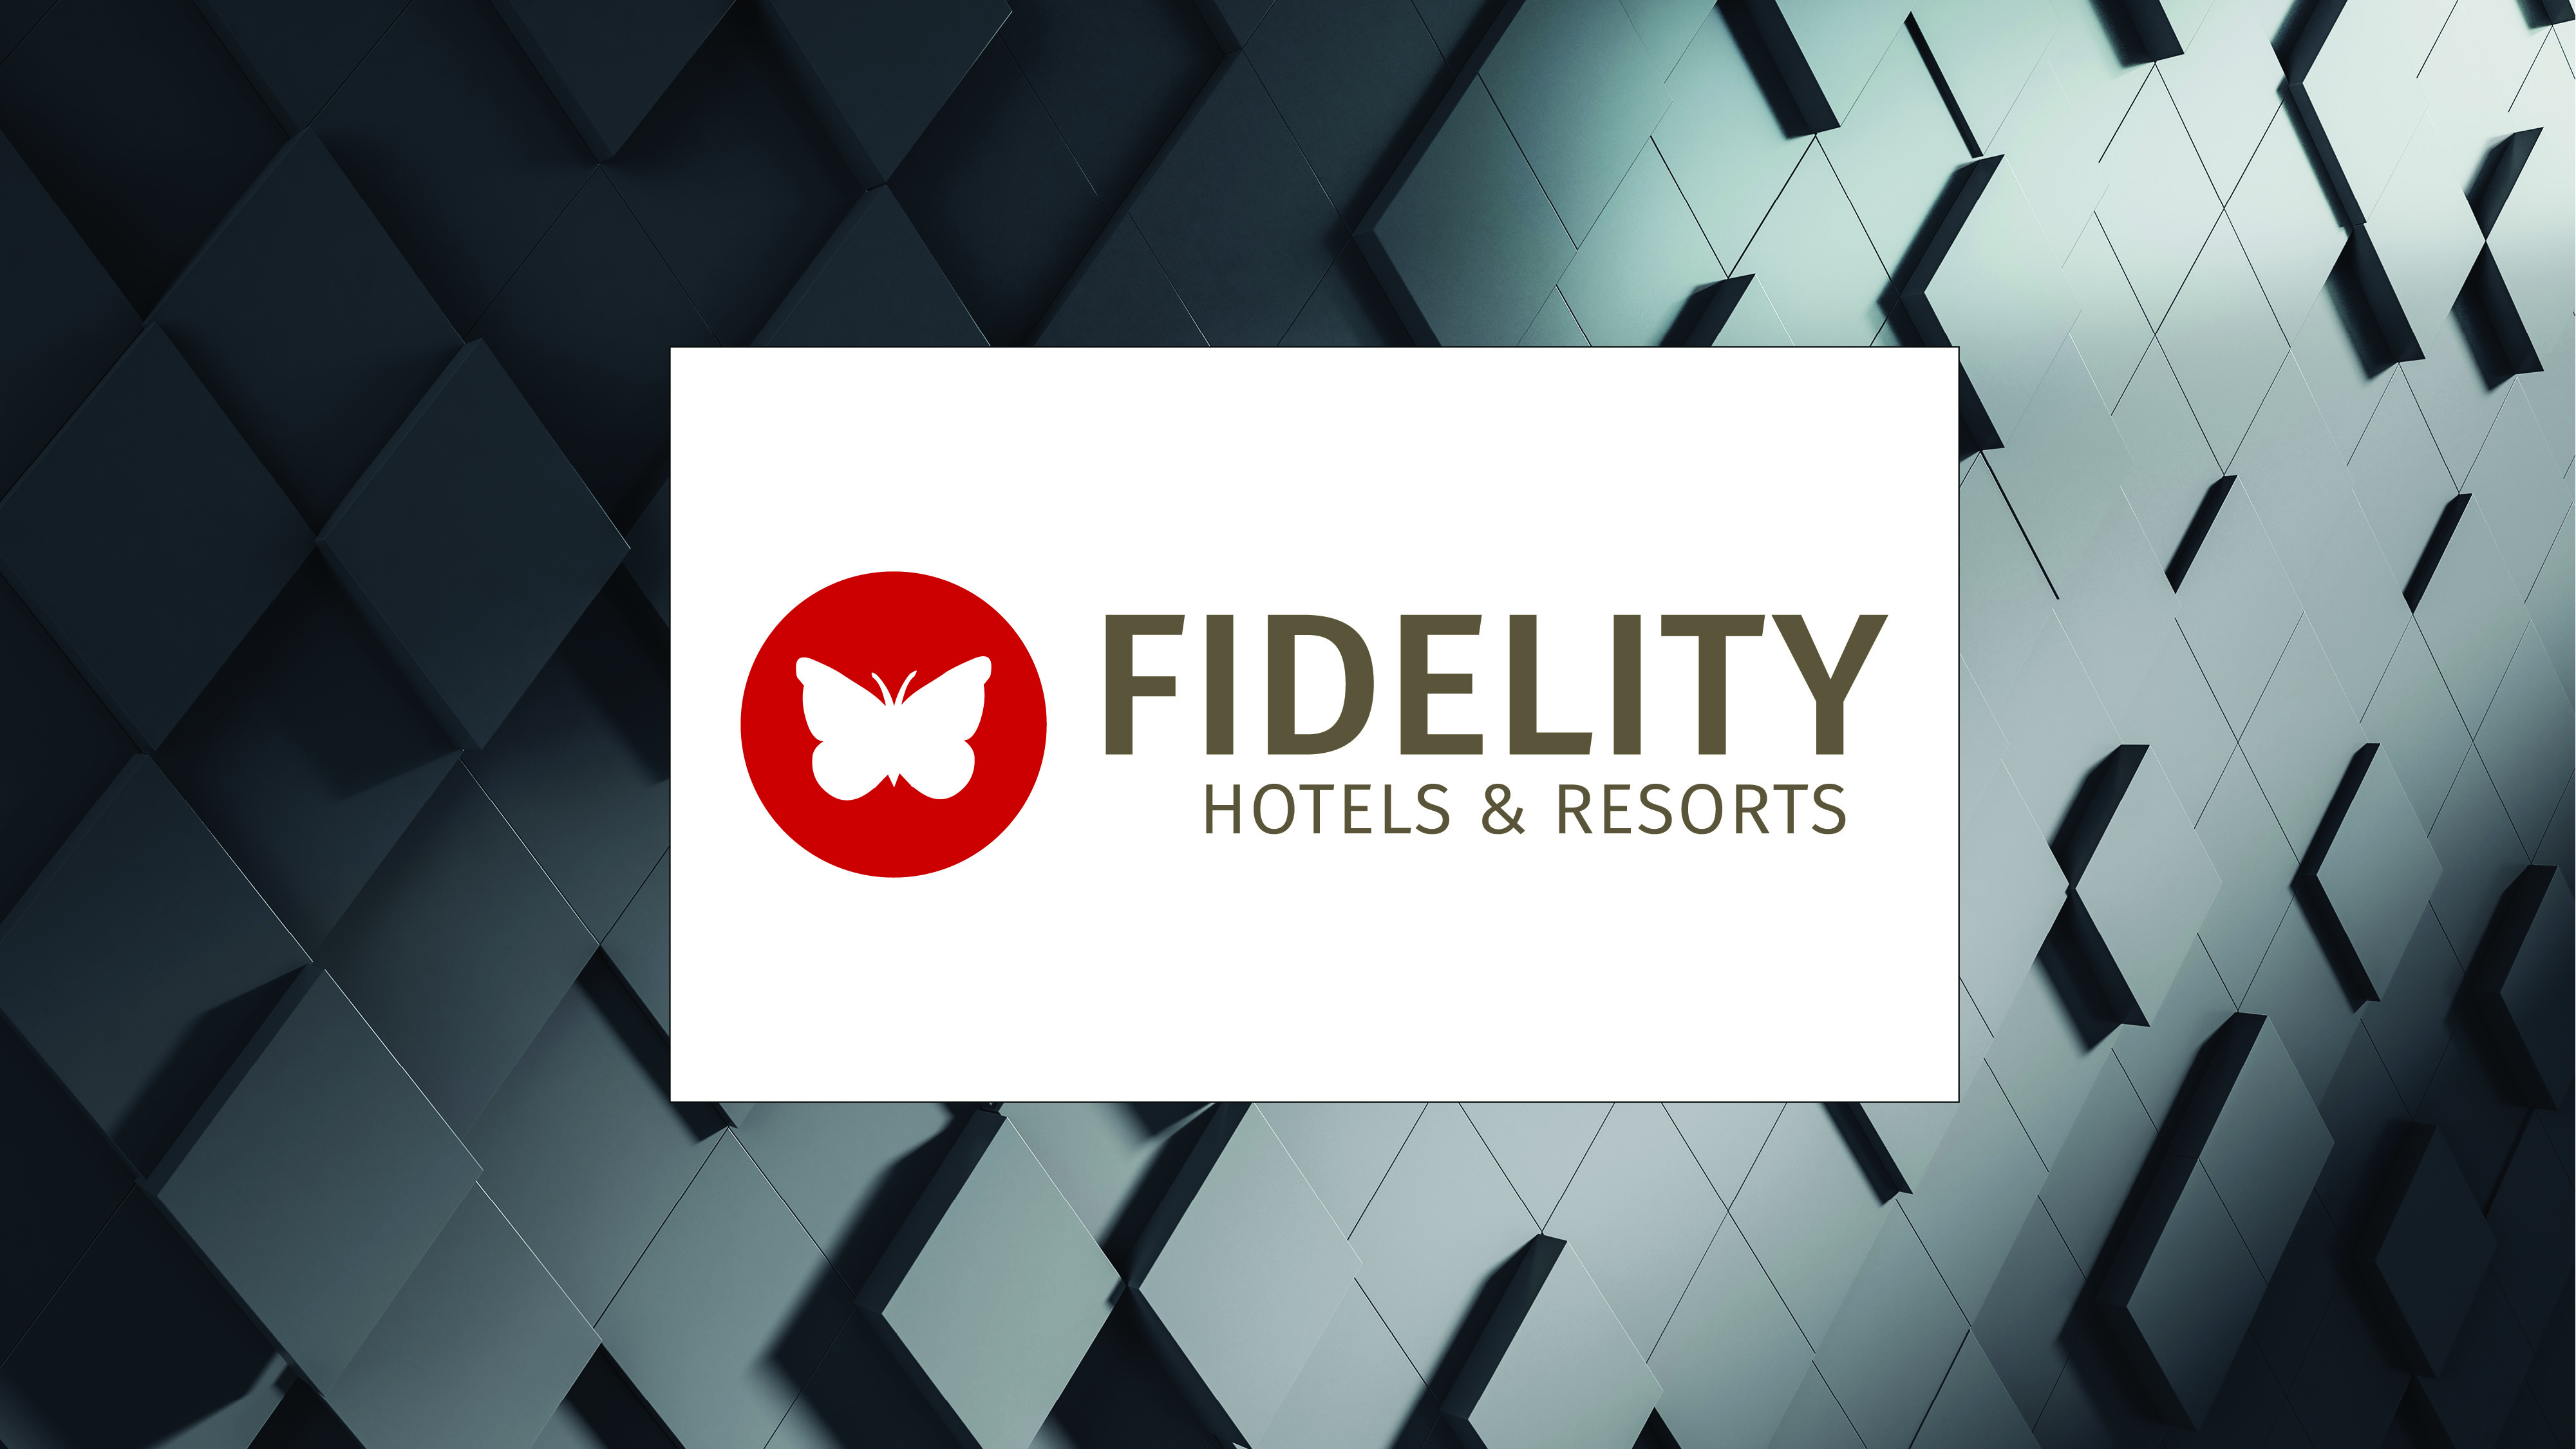 Fidelity Hotels & Resorts